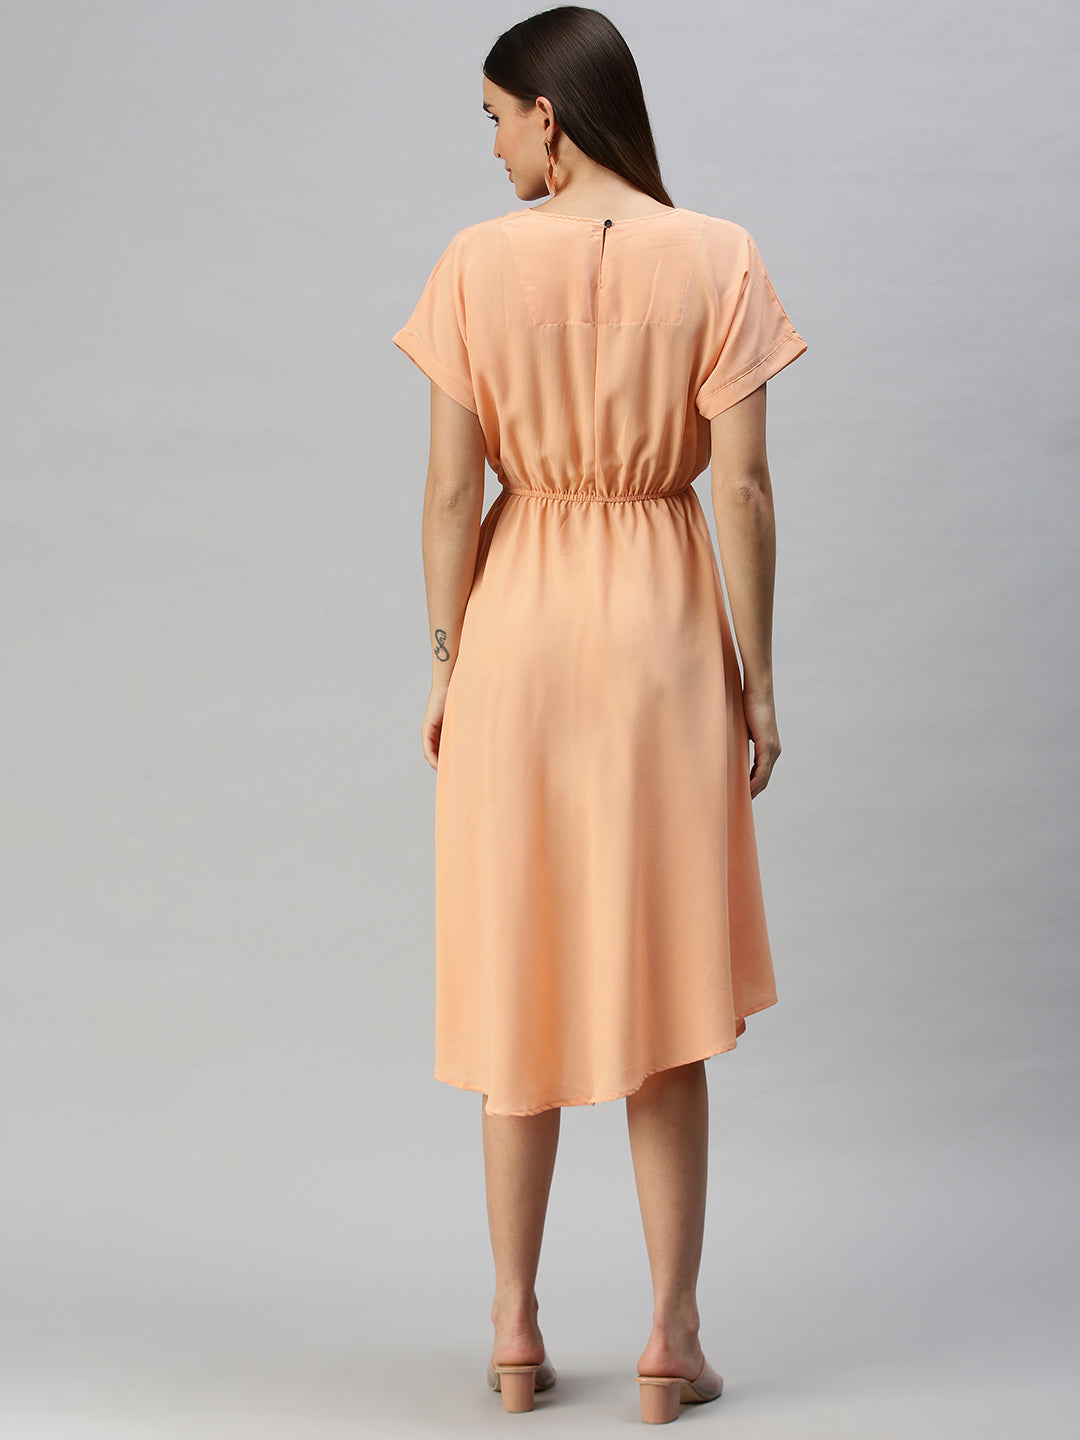 Women's A-Line Peach Dress